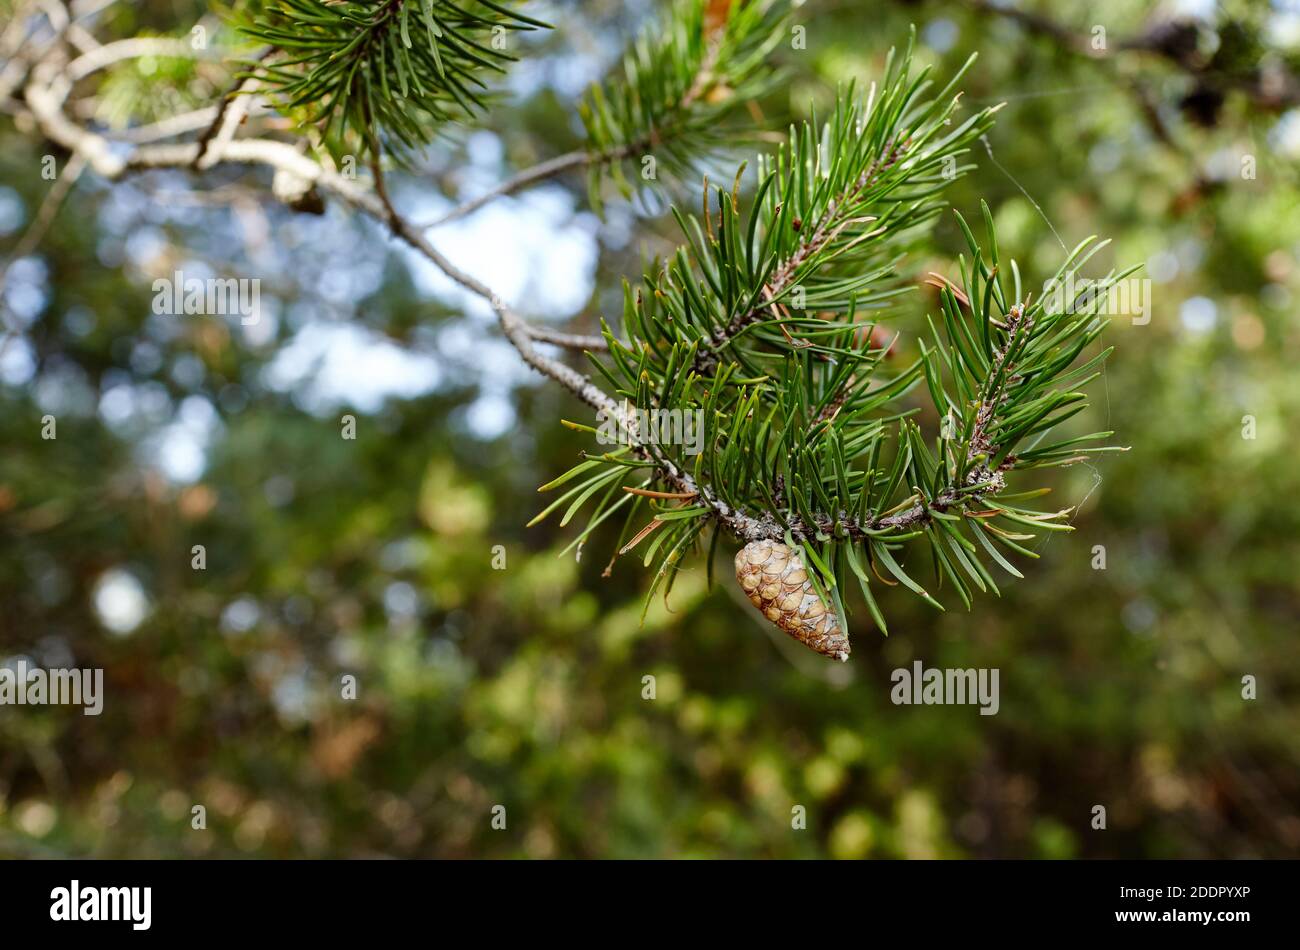 Kiefernzweig mit reifen Zapfen im Wald. Schöner Fichtenzweig mit Nadeln. Weihnachtsbaum in der Natur Stockfoto